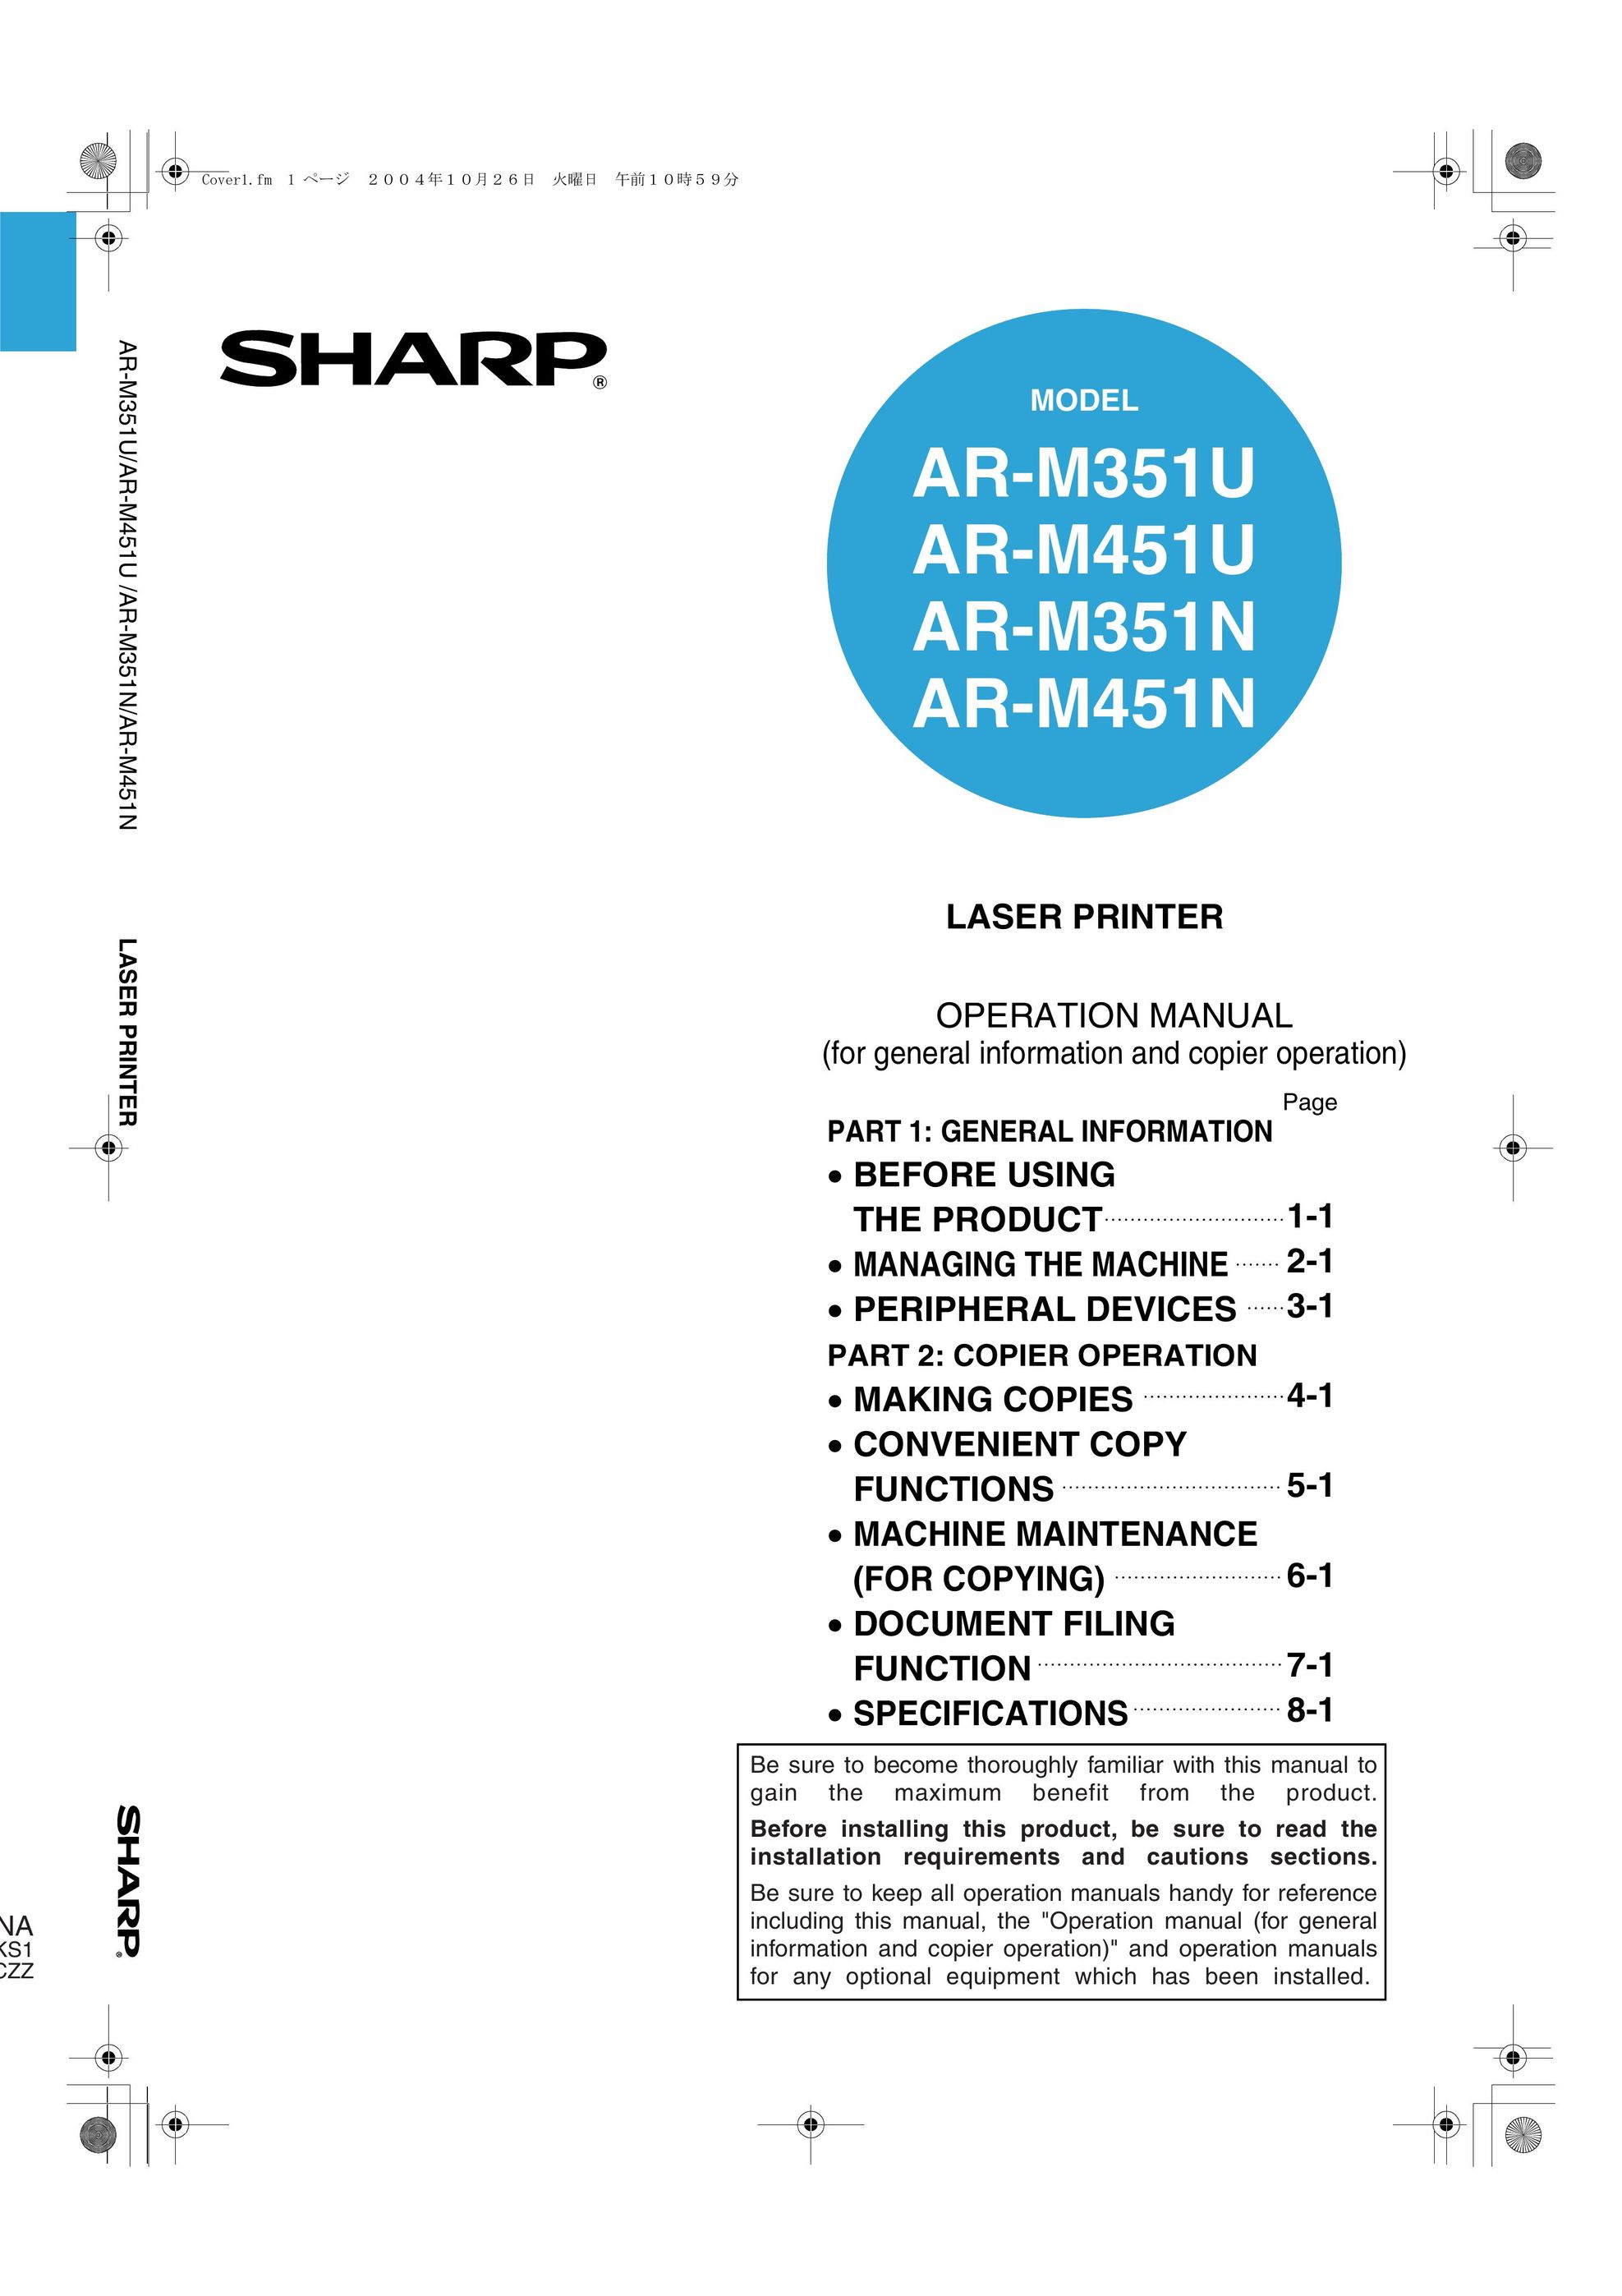 Sharp AR-M351U AR-M451U AR-M351N AR-M451N Printer User Manual